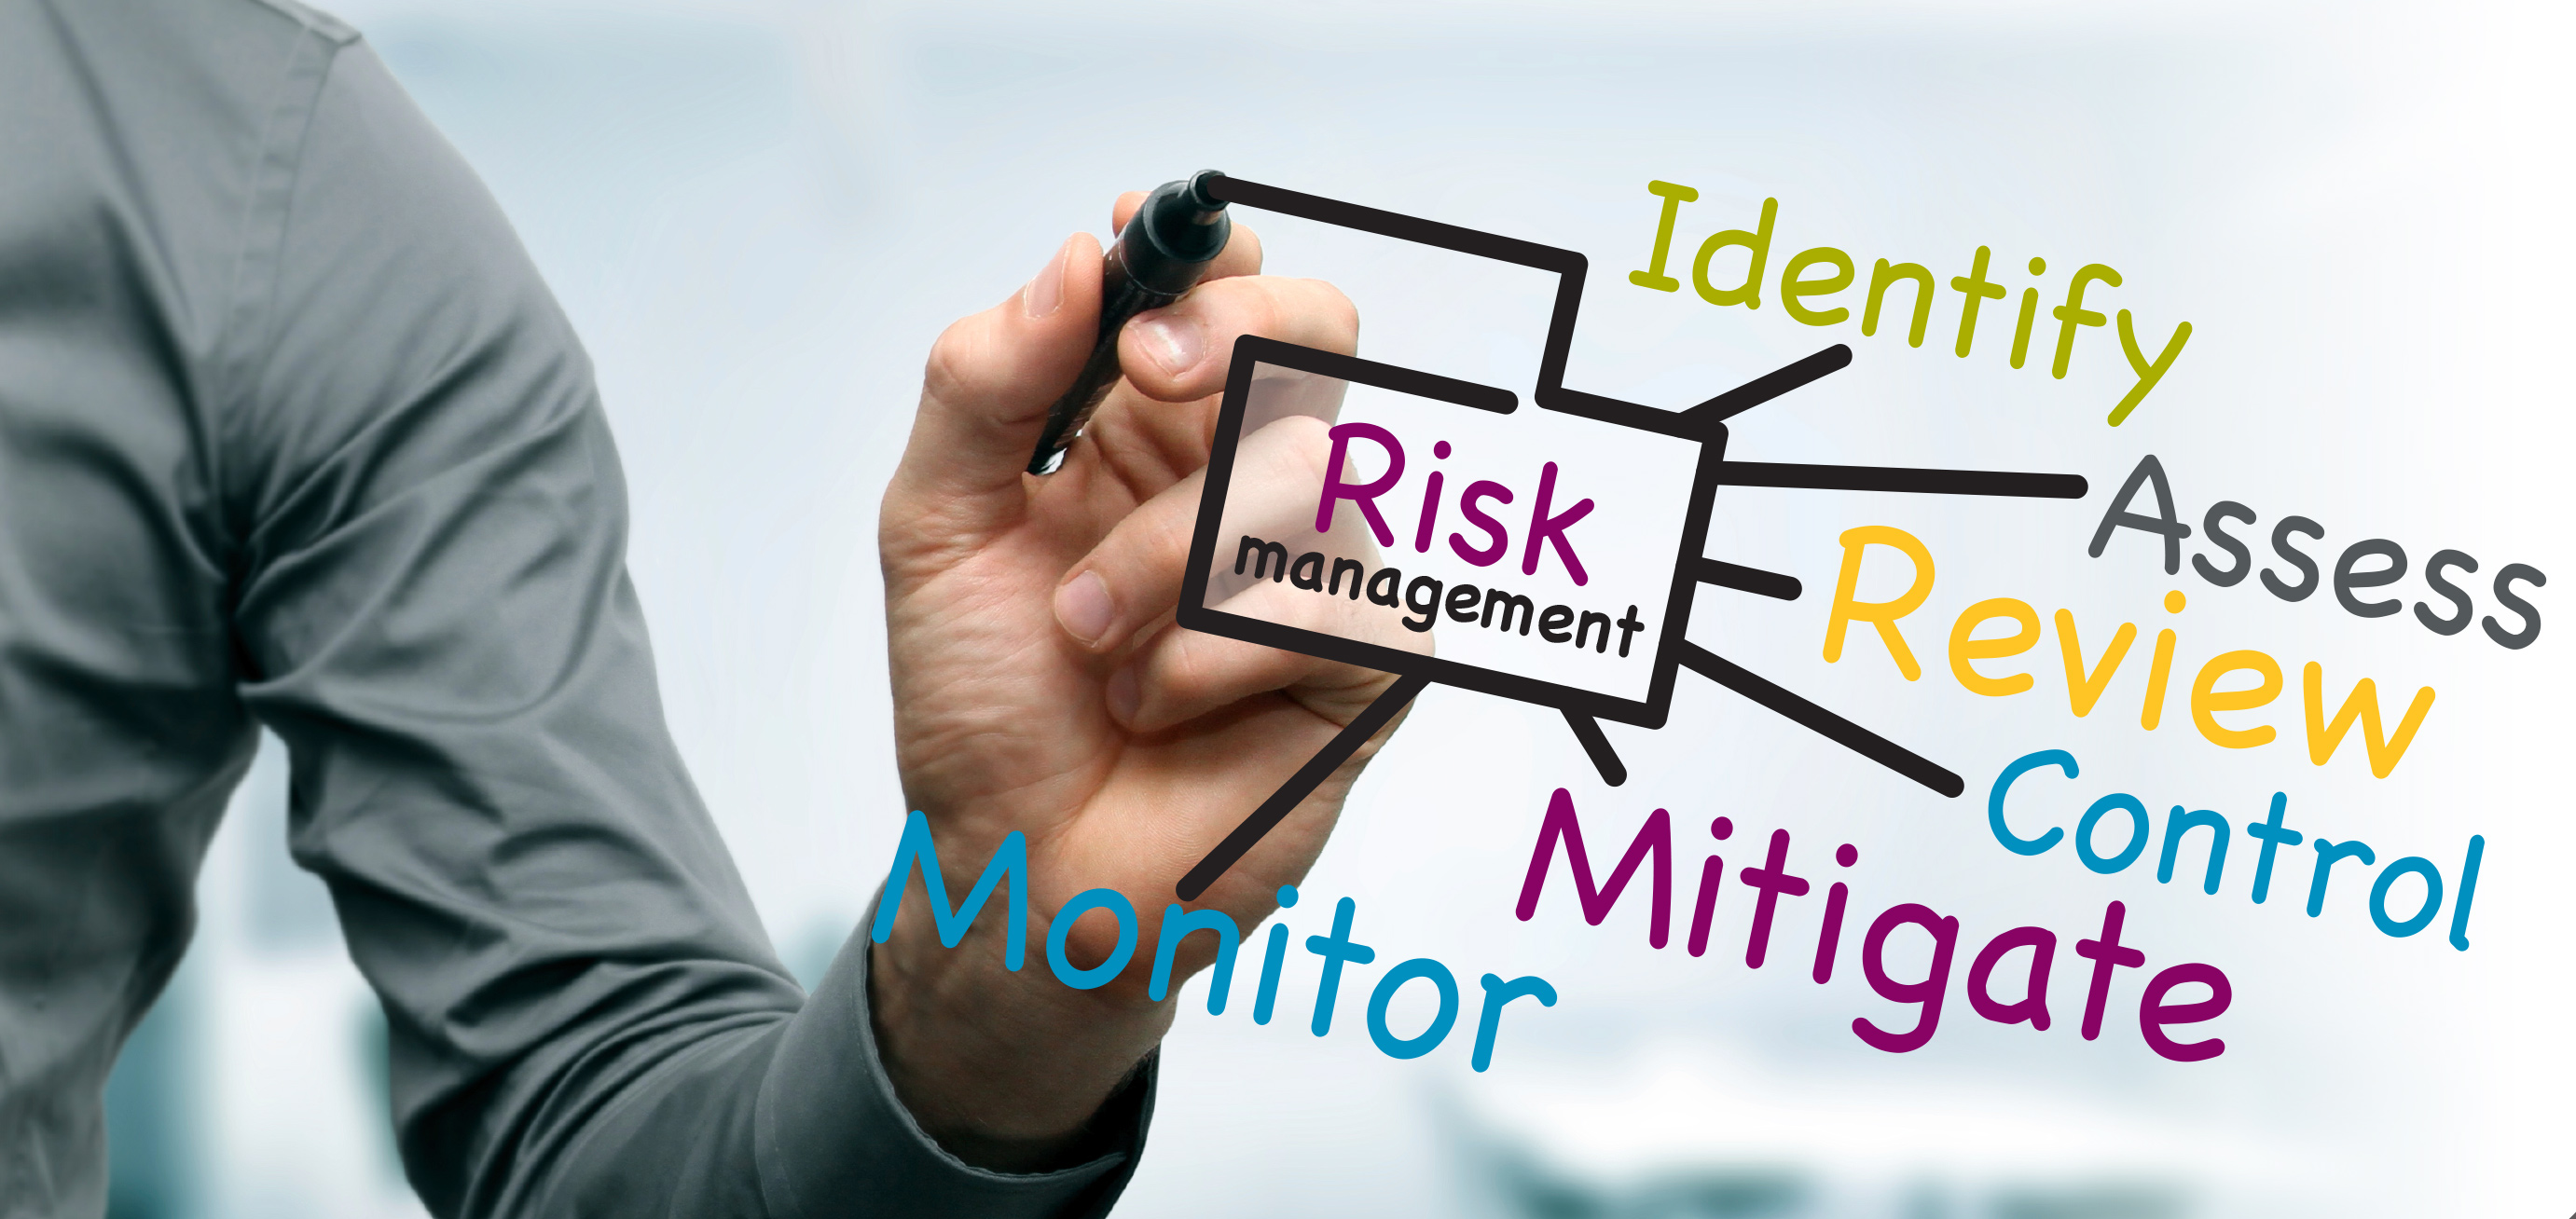 مروری بر ابزارهای کاربردی در مدیریت ریسک: الزامات و کارکردها